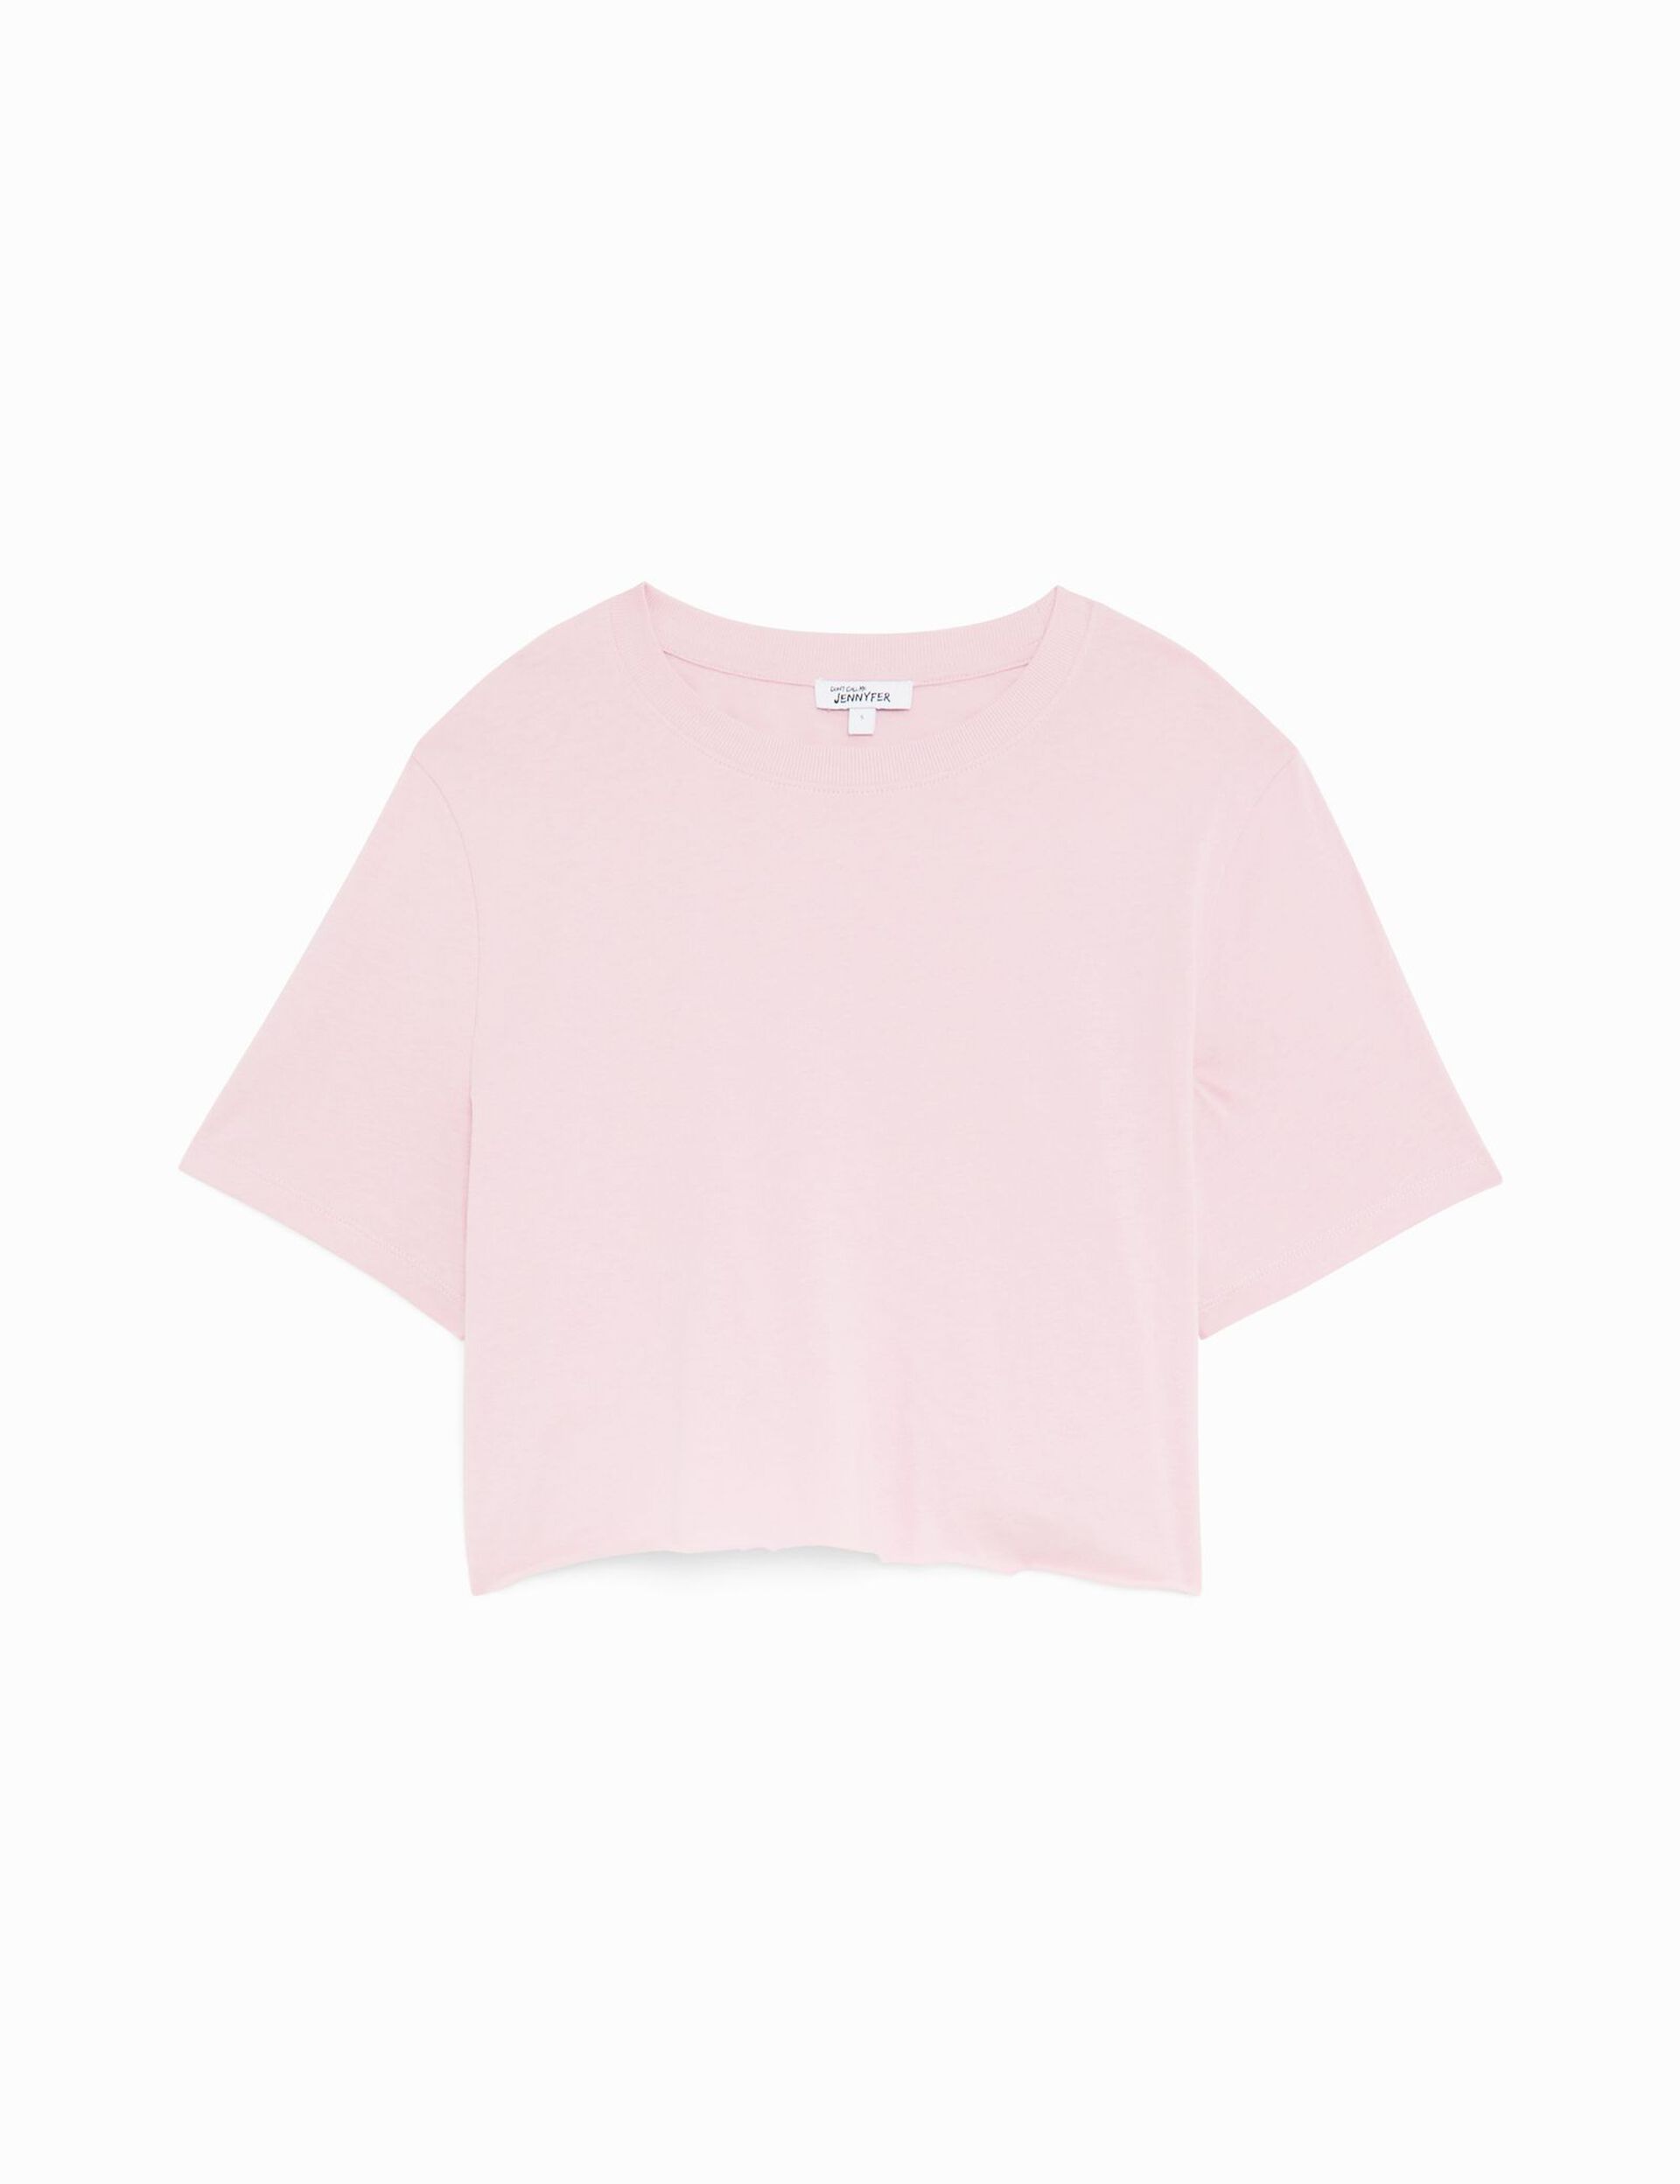 Tee-shirt court oversize rose clair